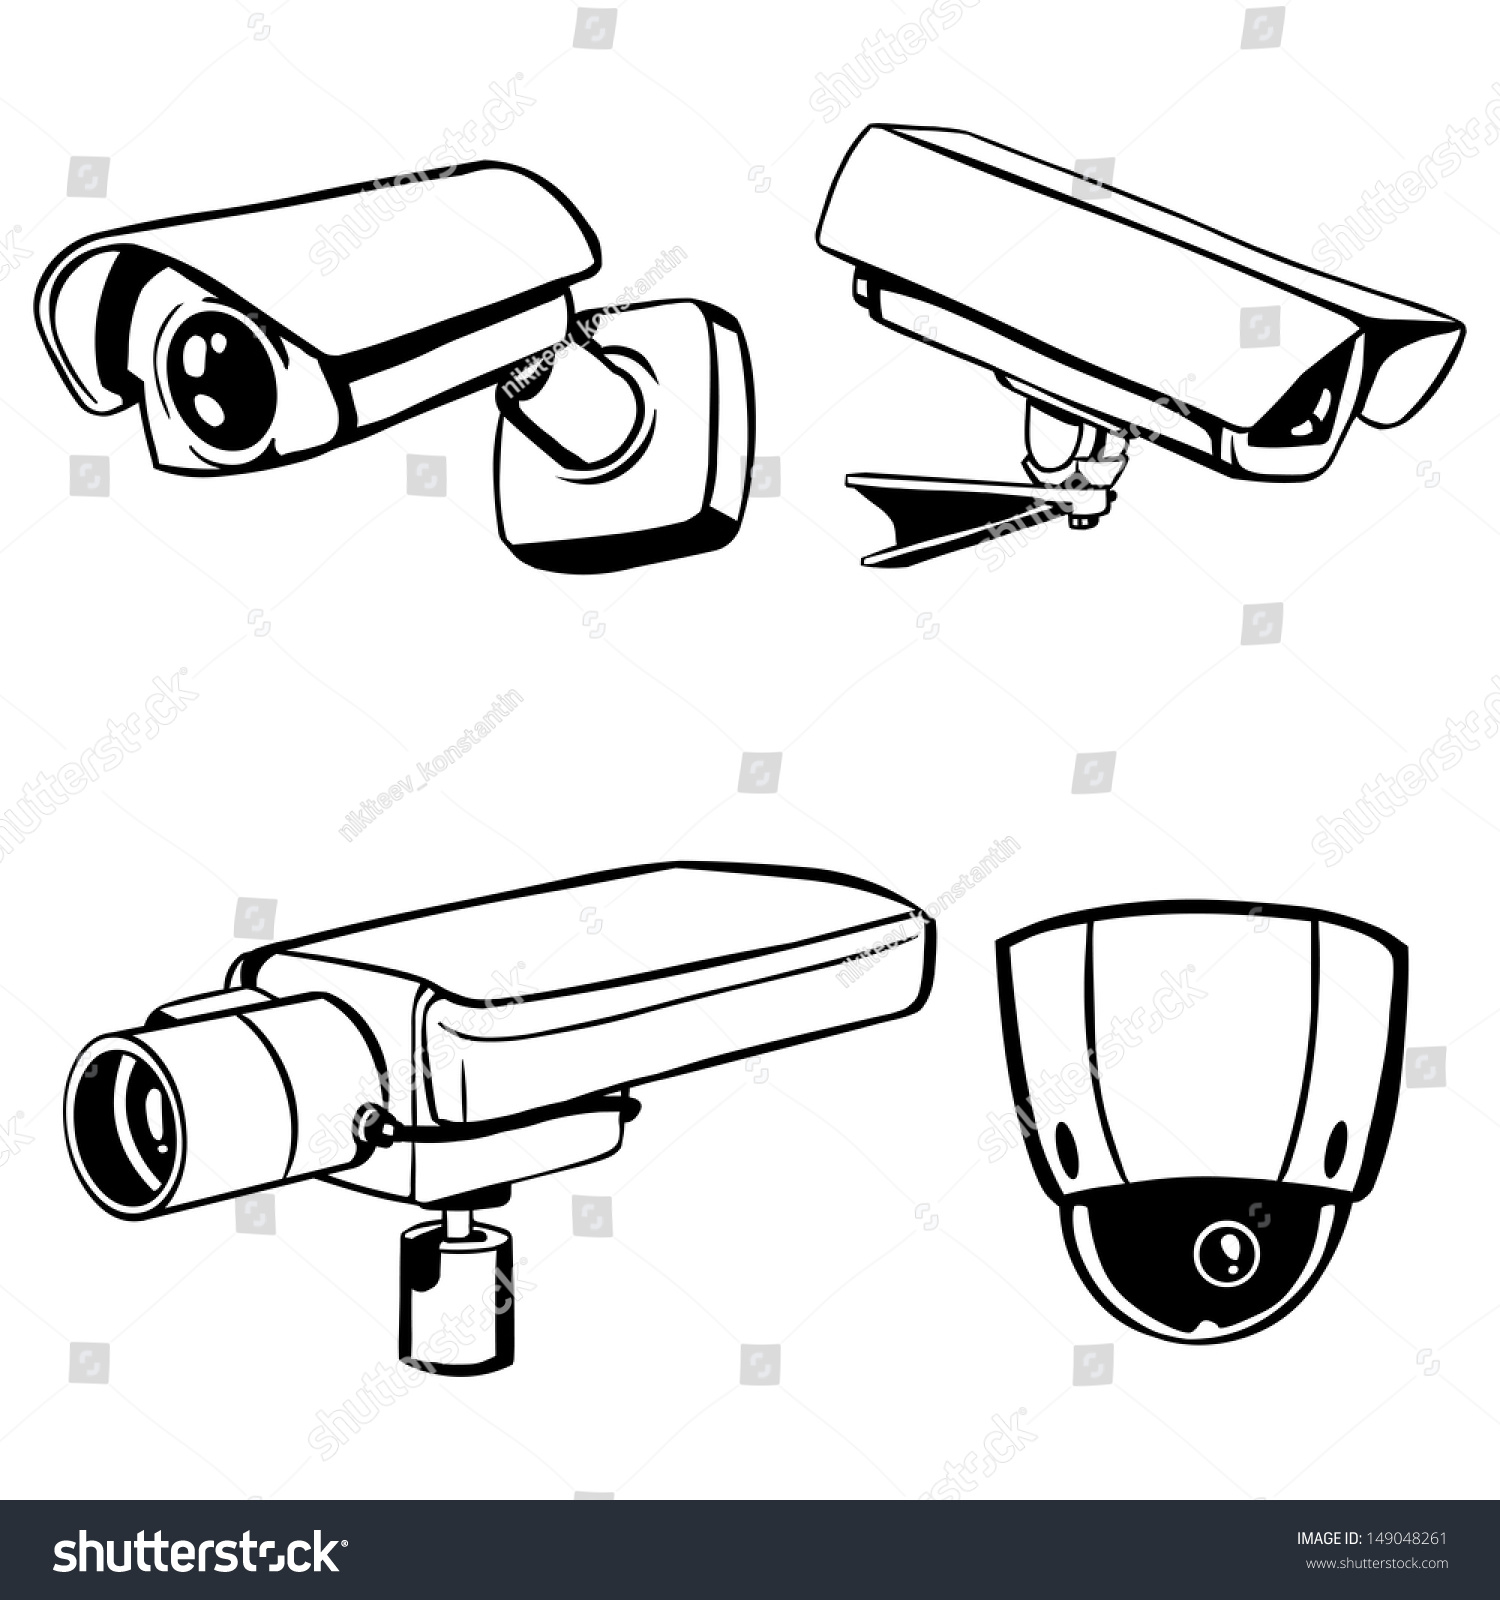 Включи камерамены. Ip66 камера видеонаблюдения. Уличная видеокамера вектор вид сбоку. Камера видеонаблюдения контур. Значок камеры видеонаблюдения.